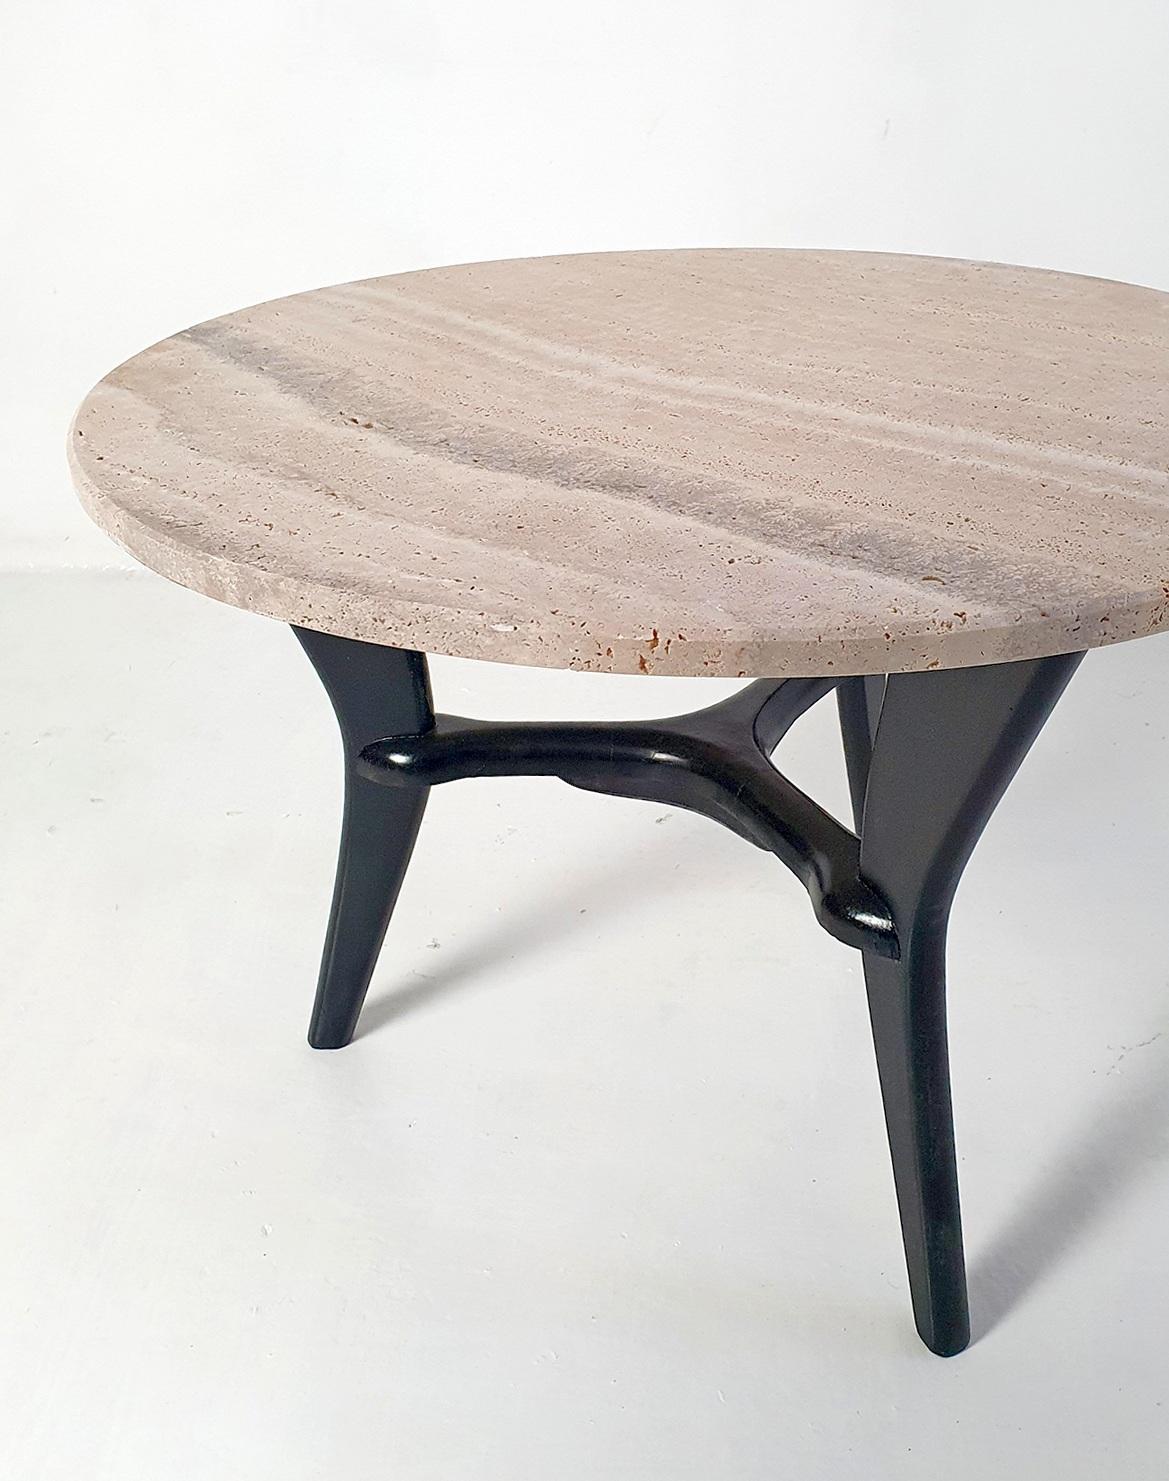 Voici une remarquable table basse datant de l'âge d'or du design italien - les années 1950. Cette pièce élégante est dotée d'une base tripode sculpturale unique en son genre, fabriquée en bois noirci, évoquant un sentiment de mouvement et de